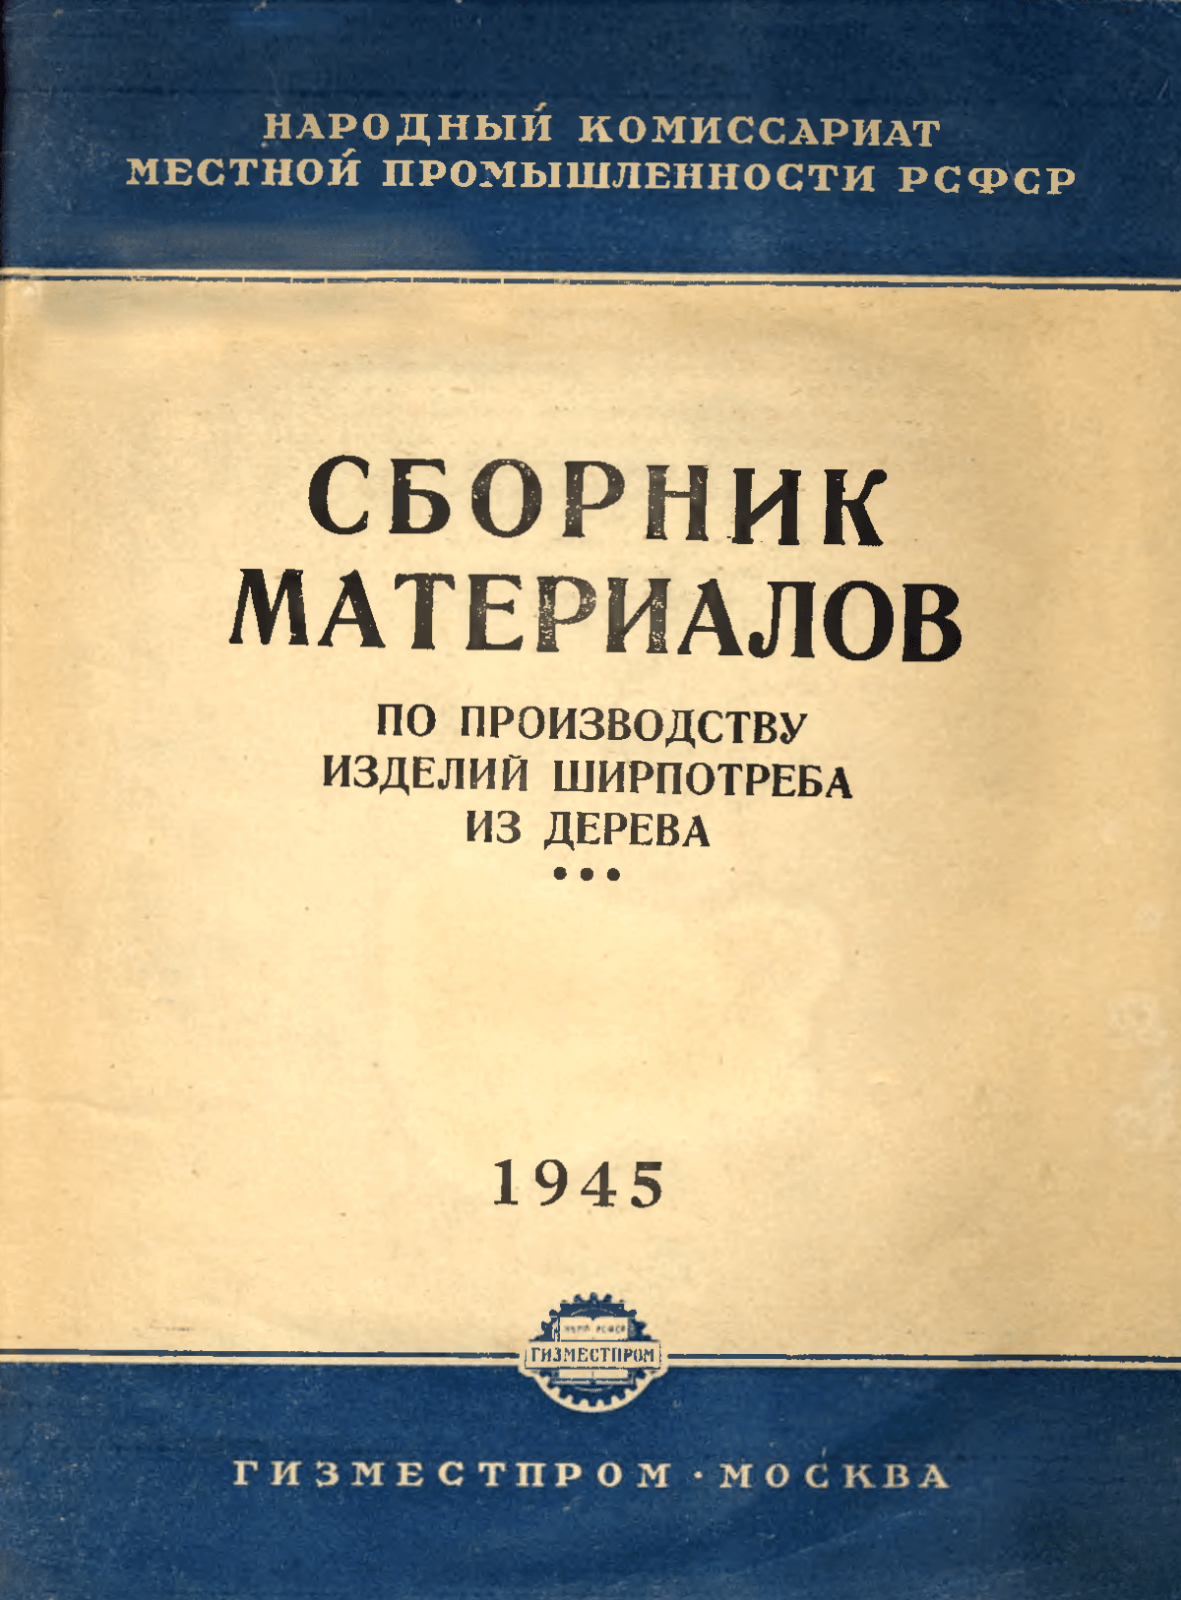 Сборник материалов по производству изделий ширпотреба из дерева, 1945 год